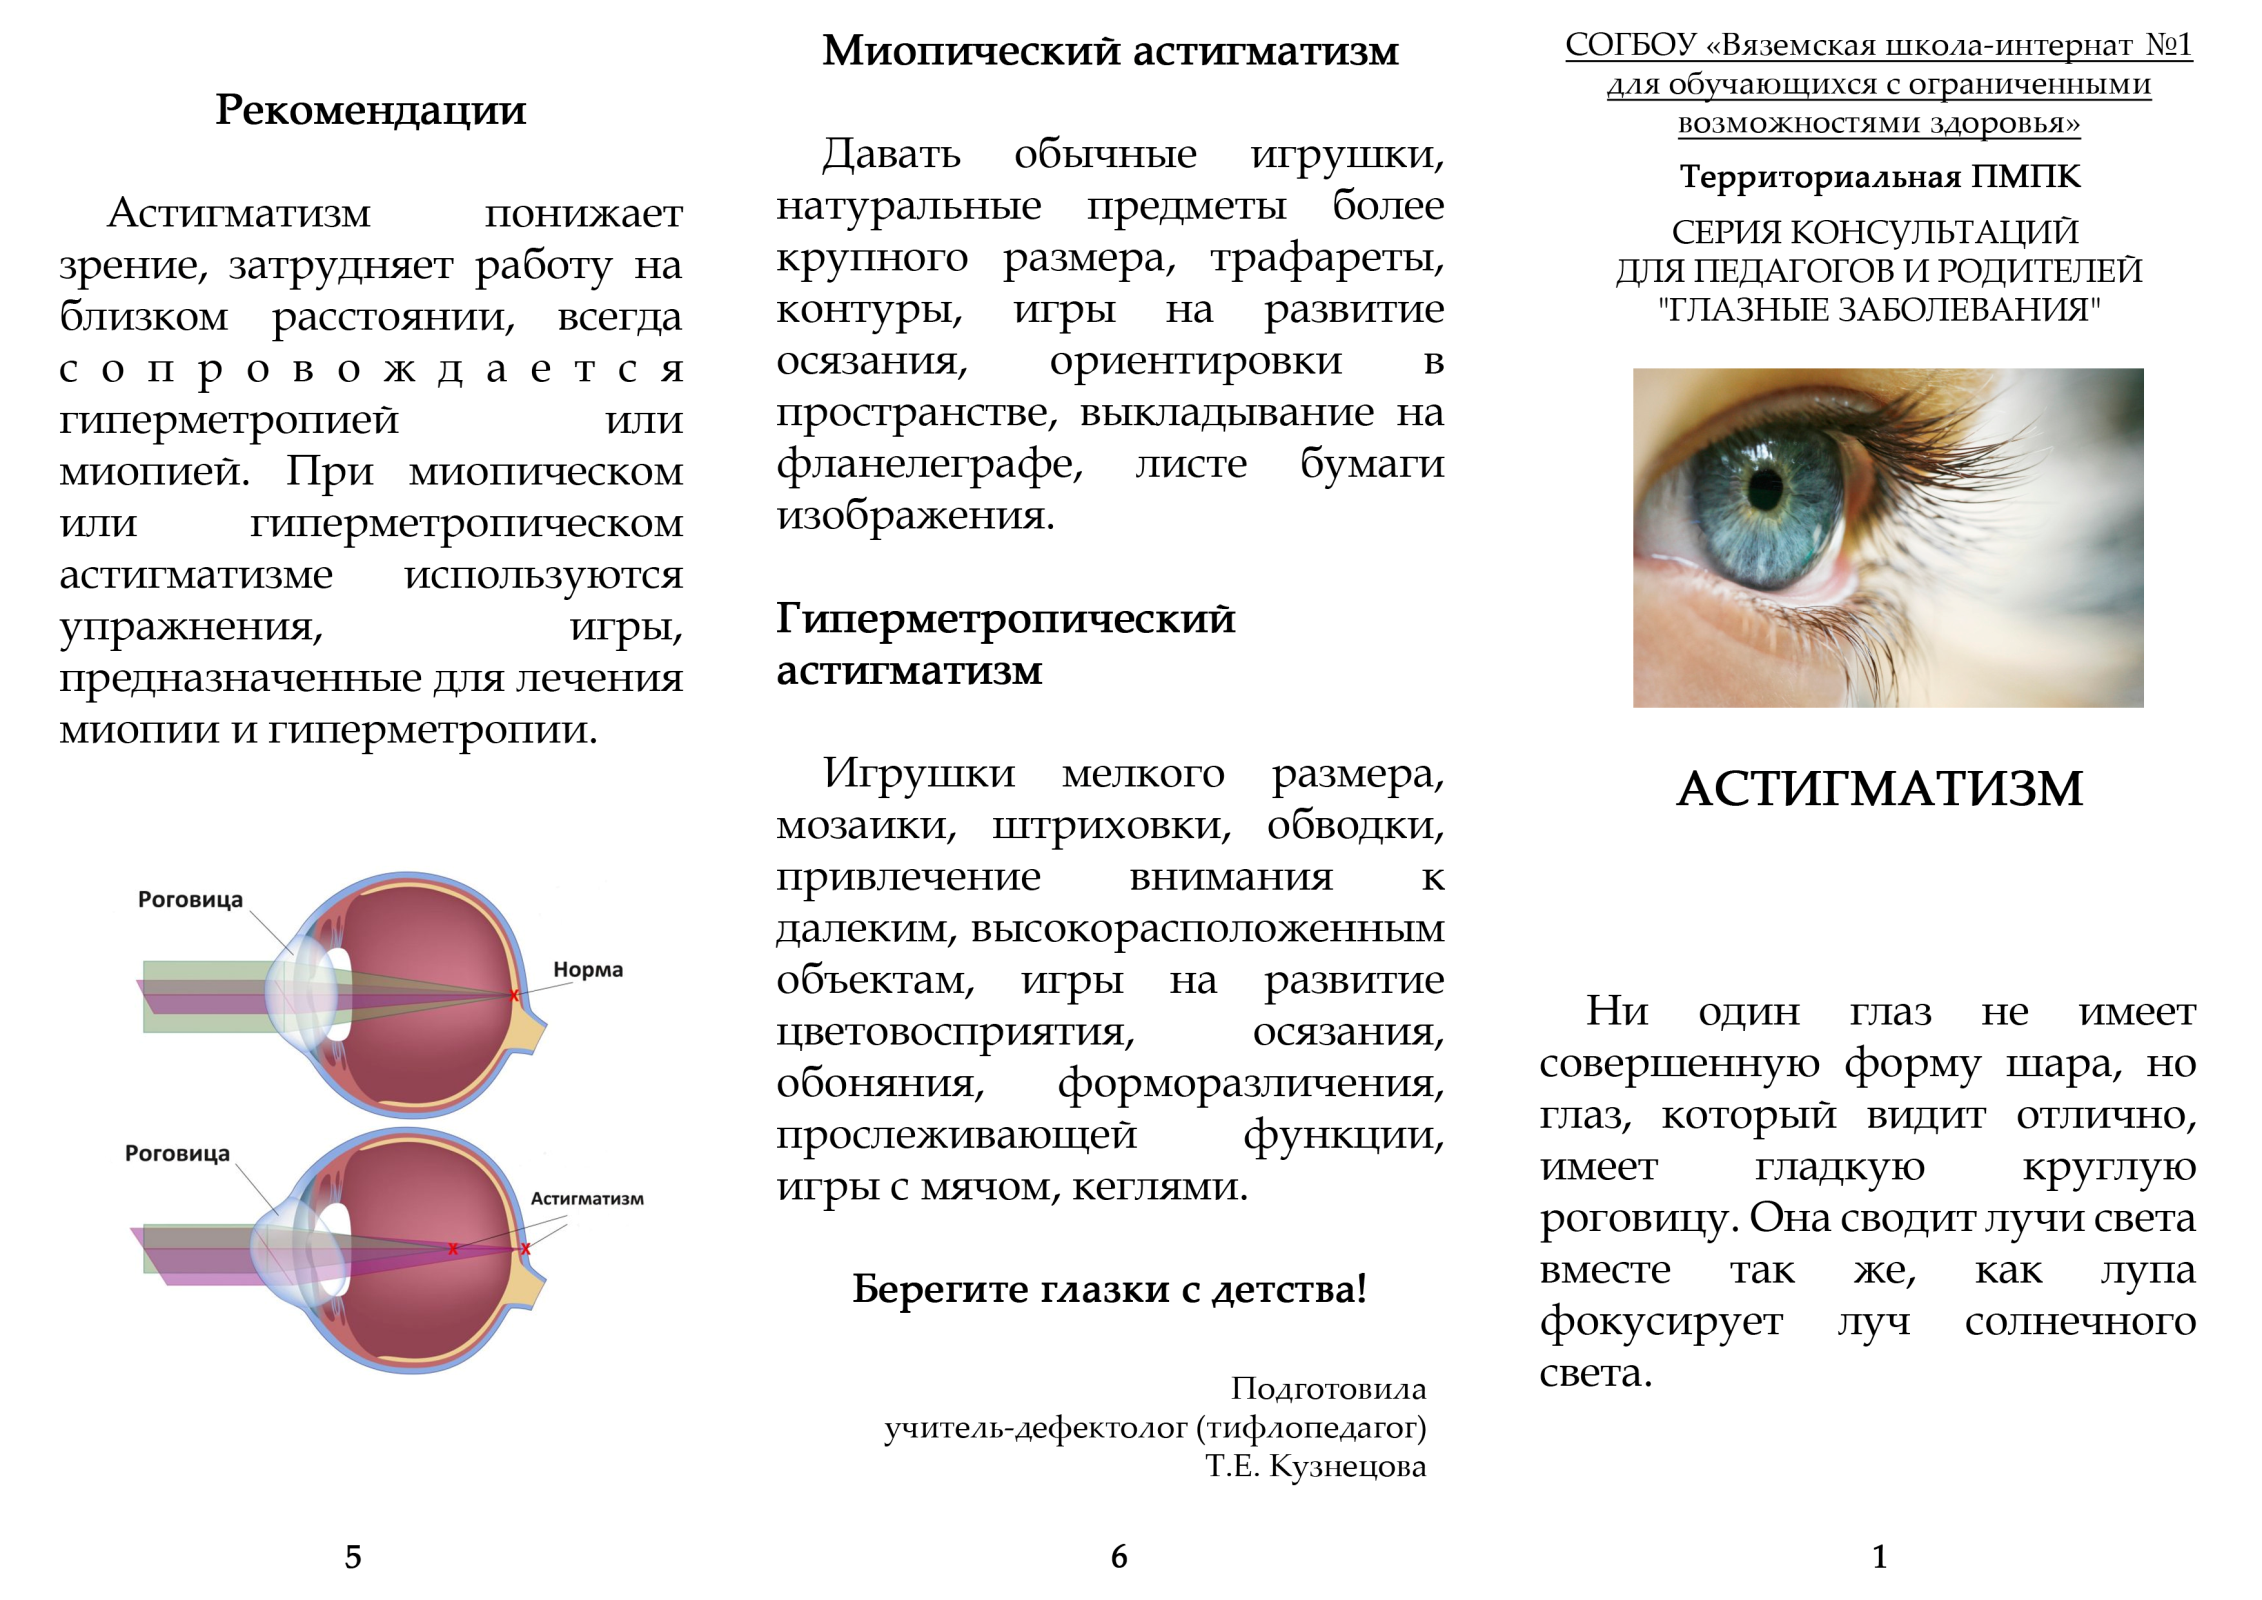 Сложный астигматизм бывает миопическим и гиперметропическим, что это за нарушение рефракции обоих глаз, его лечение и коррекция